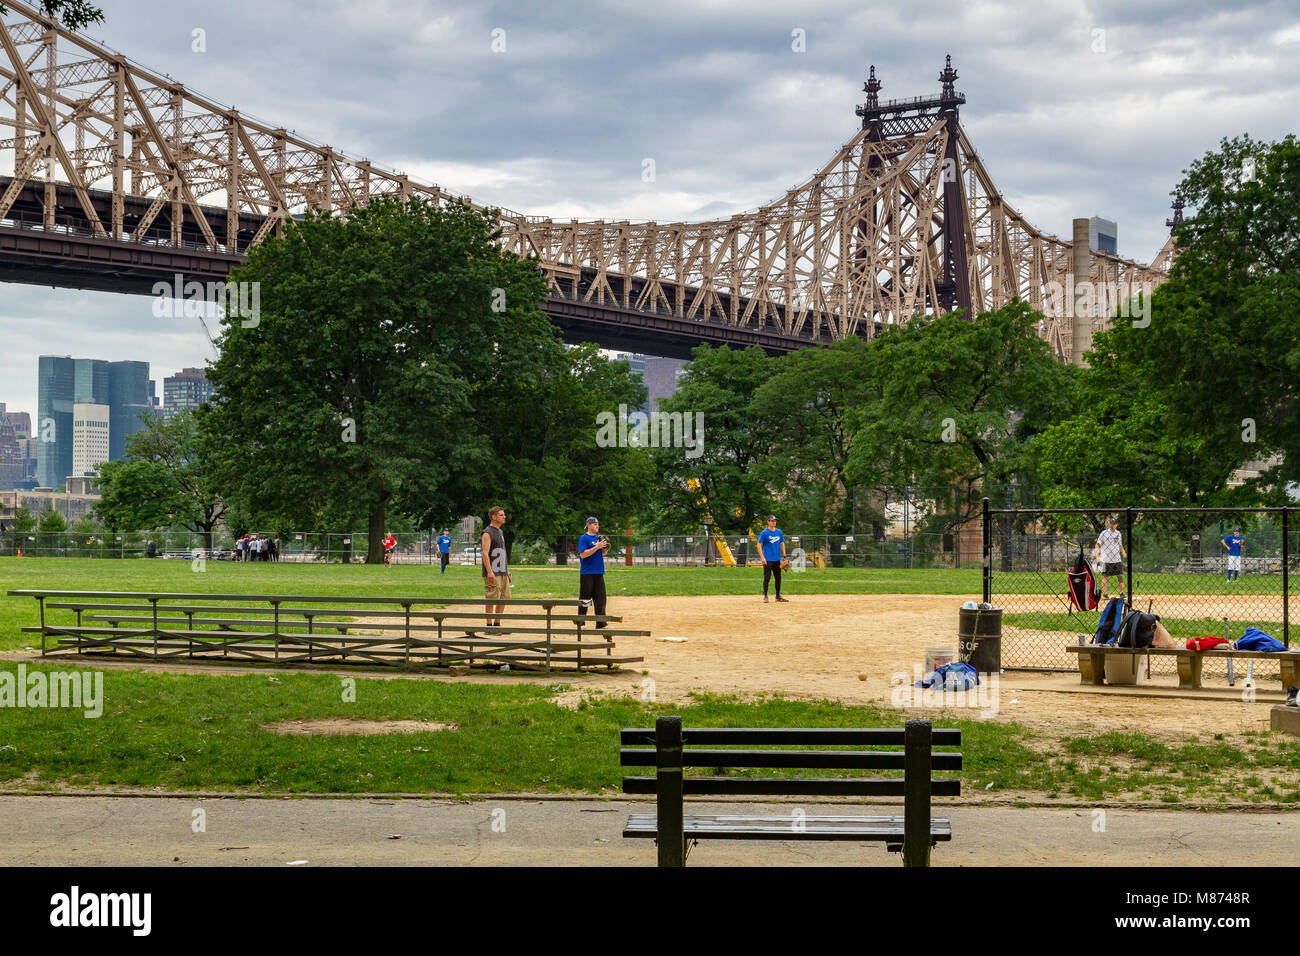 Baseballspieler im Queensbridge Park, einem Stadtpark unterhalb der 59th St Queensboro Bridge, Long Island City, Queens, New York, USA Stockfoto